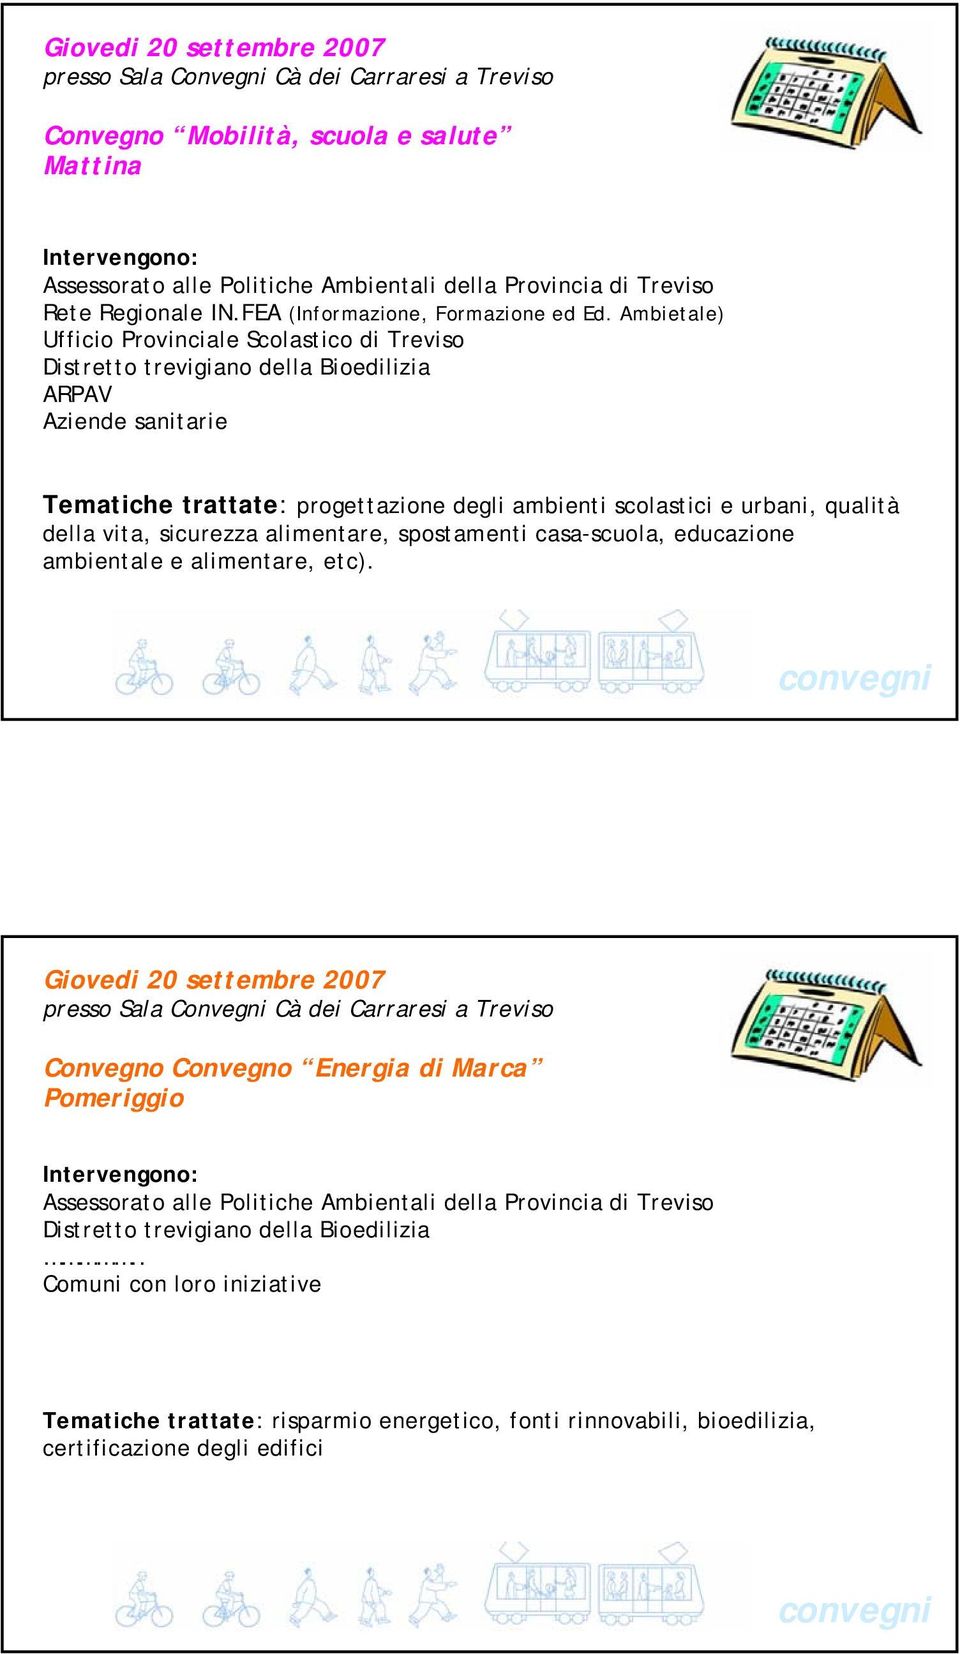 Ambietale) Ufficio Provinciale Scolastico di Treviso Distretto trevigiano della Bioedilizia ARPAV Aziende sanitarie Tematiche trattate: progettazione degli ambienti scolastici e urbani, qualità della